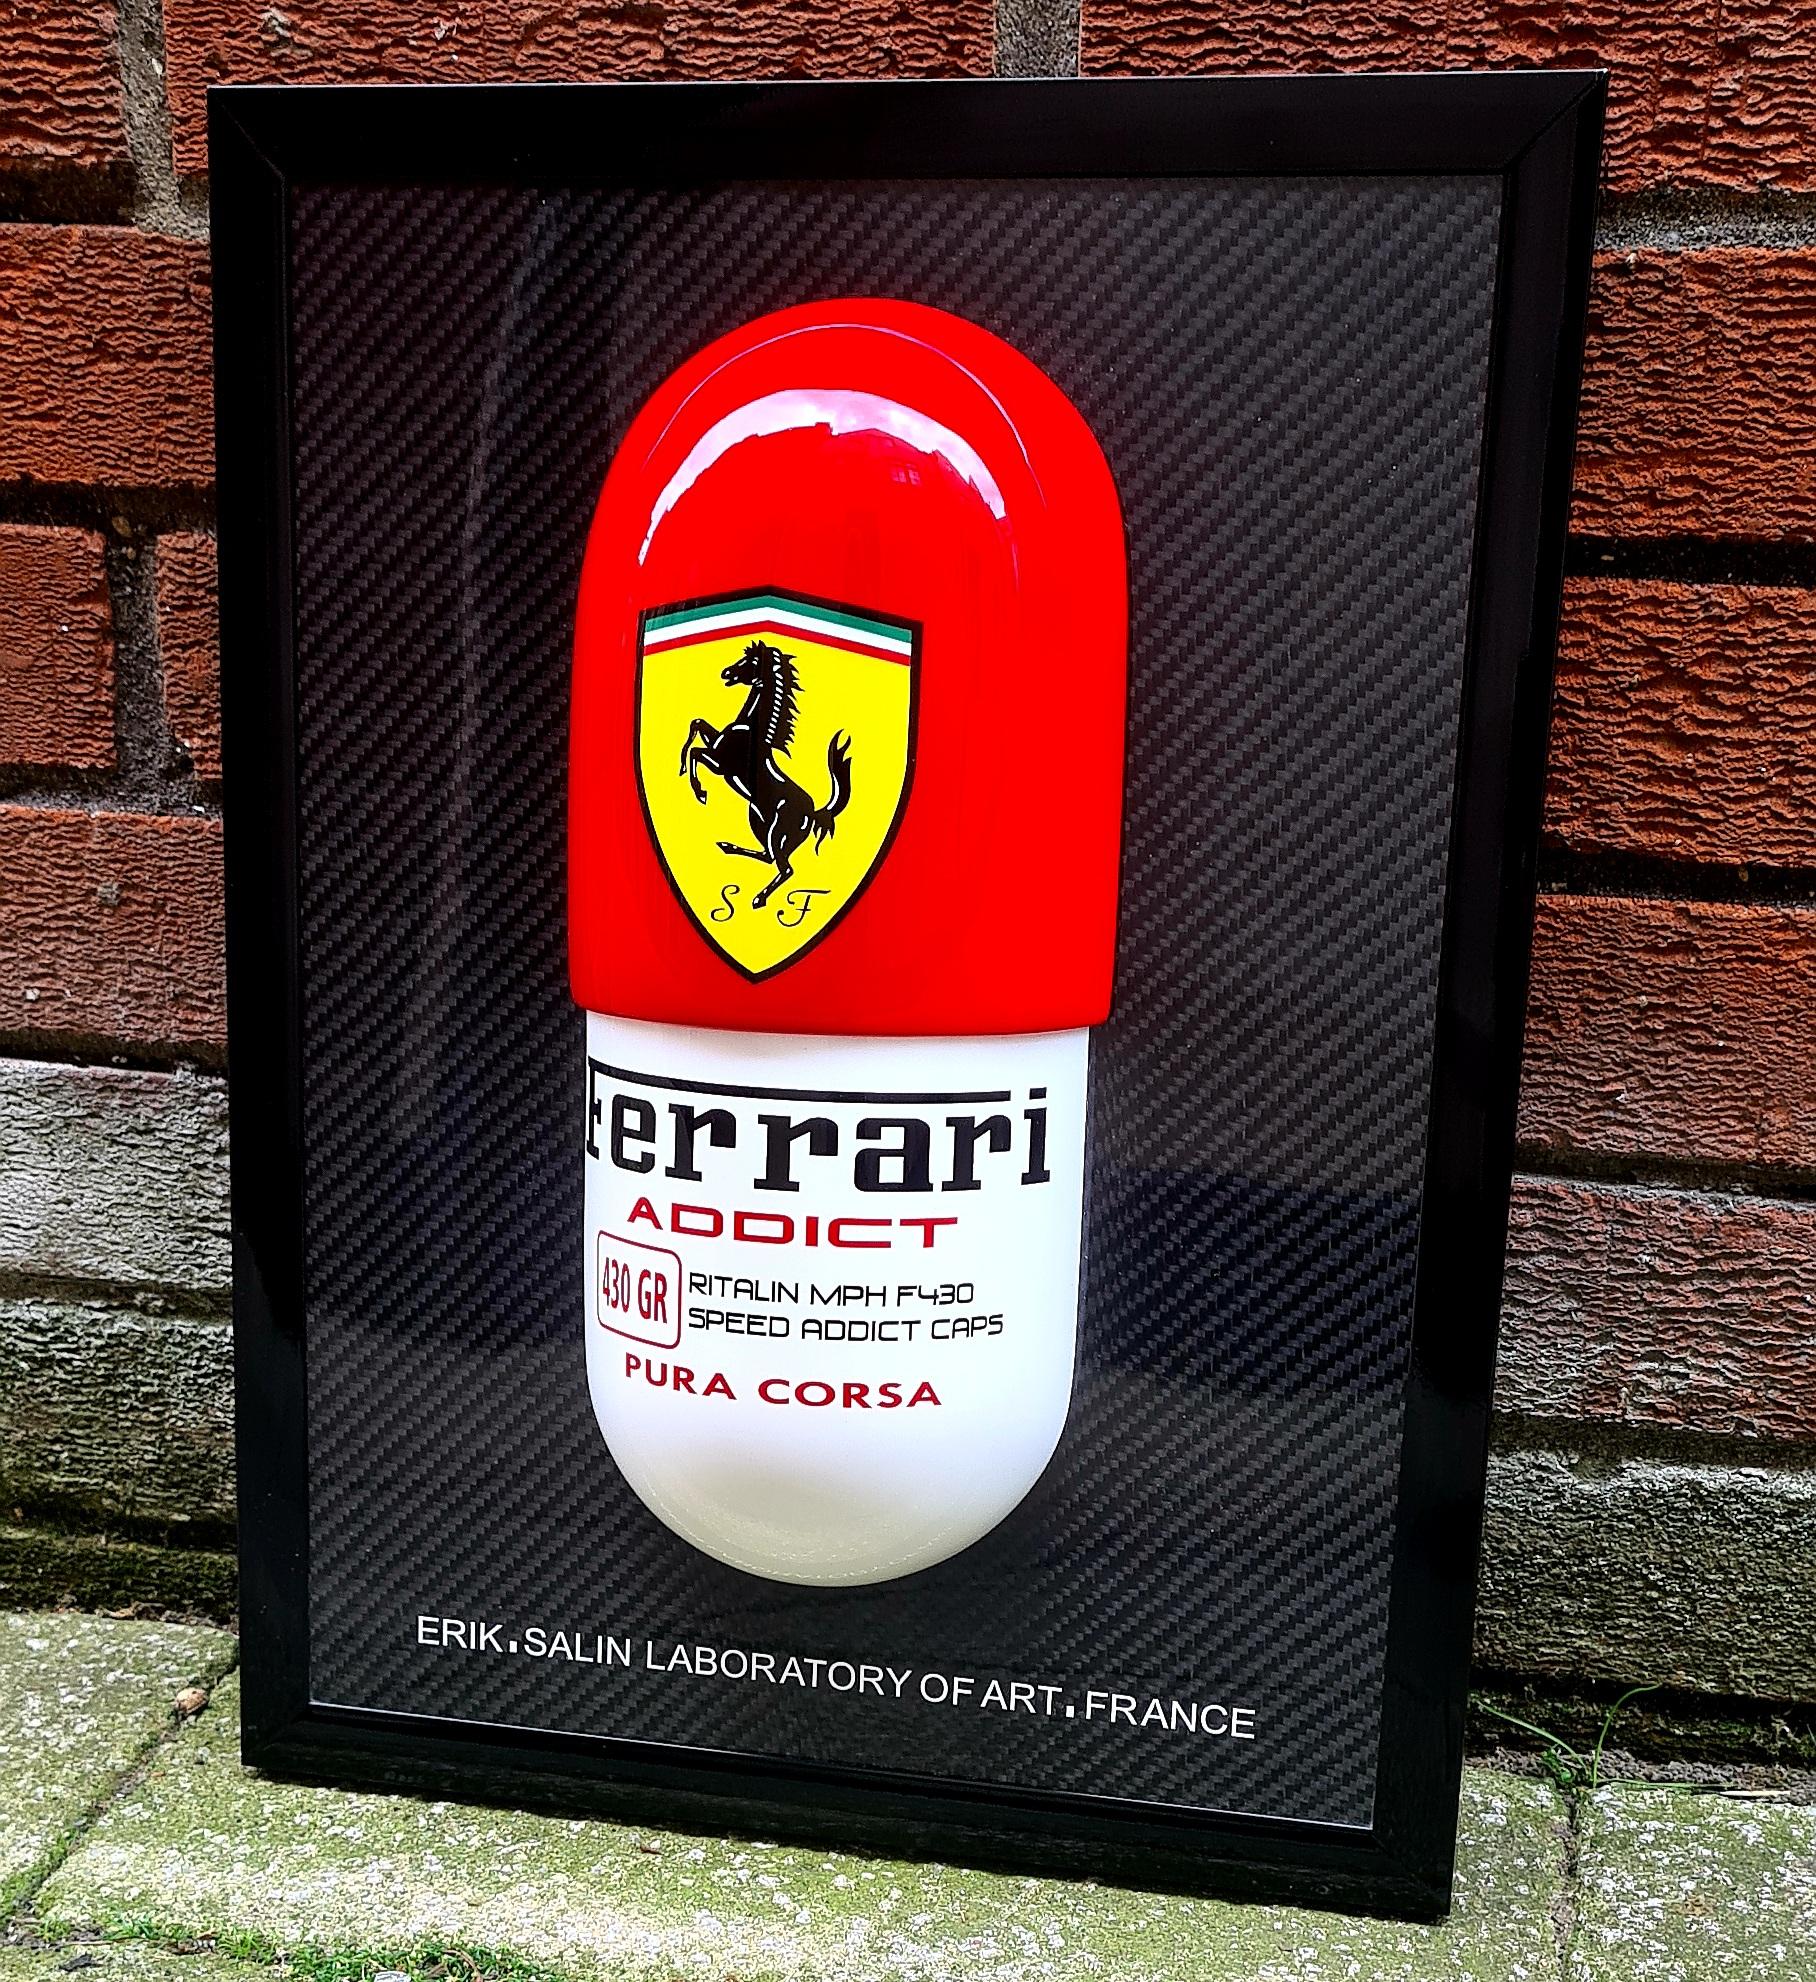 Ferrari Addict Wall Capsule - Mixed Media Art by Erik Salin